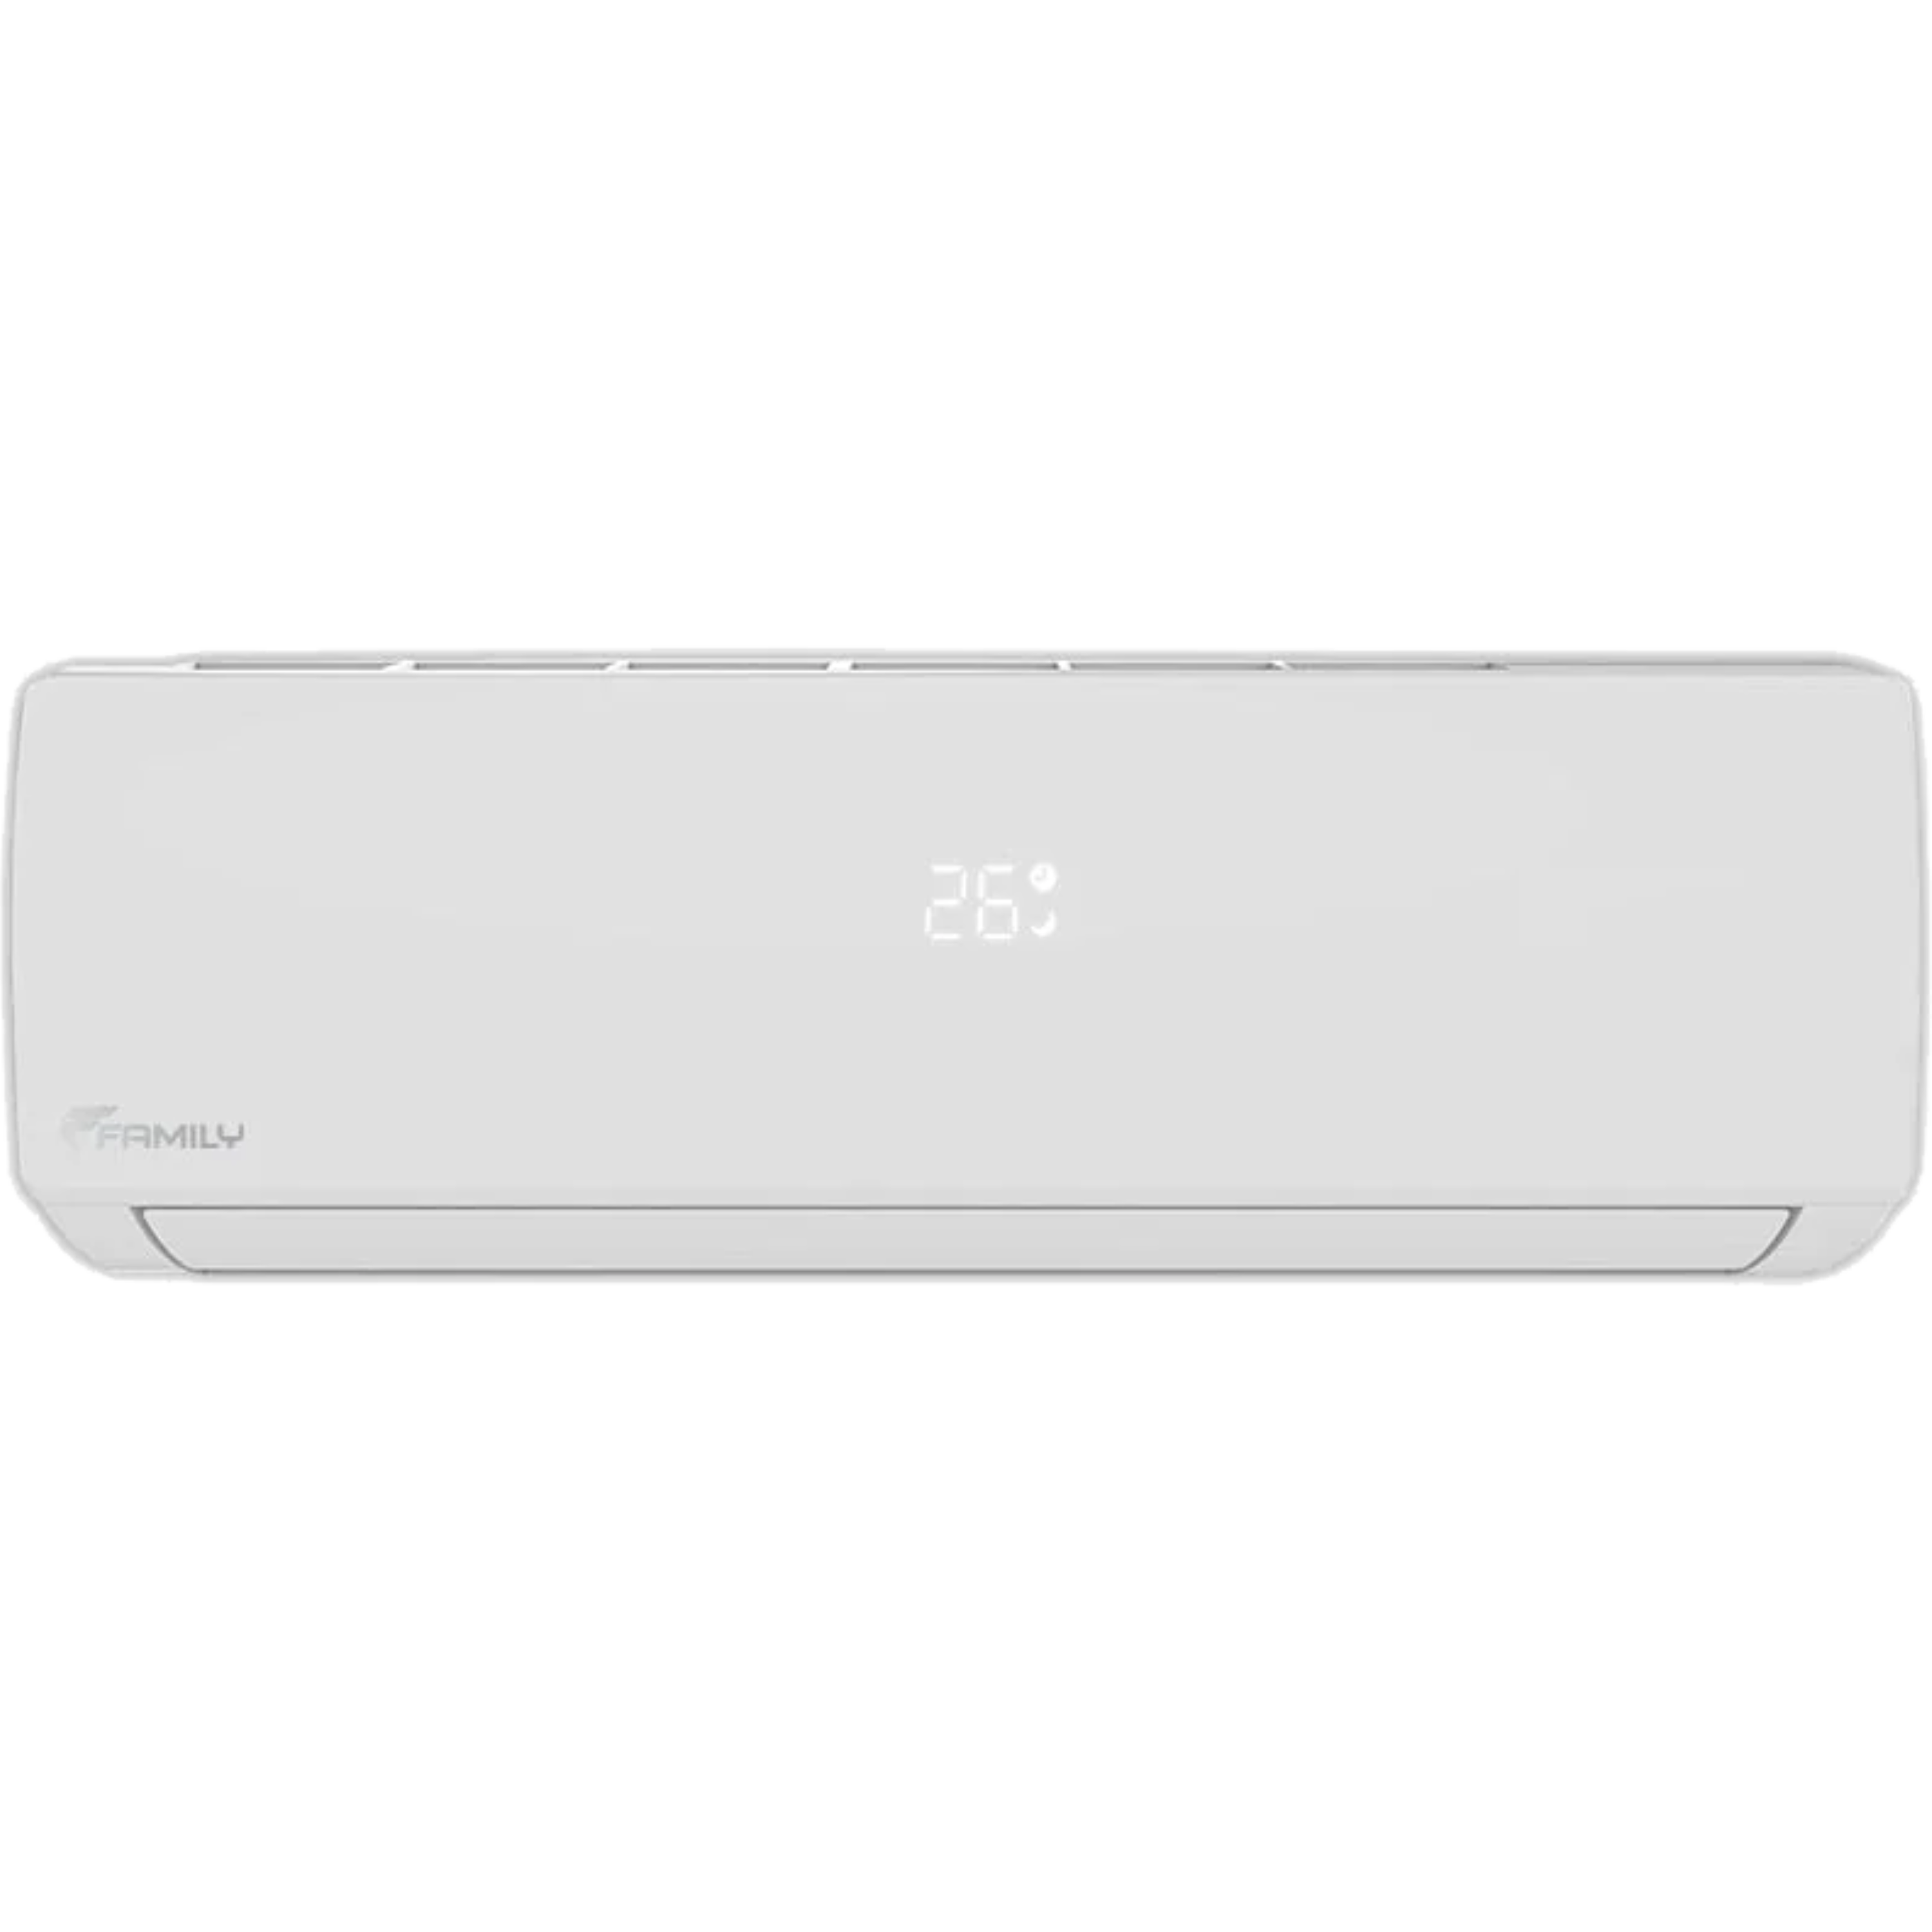 מזגן עילי Family Comfort Inverter 25 - צבע לבן חמש שנות אחריות ע